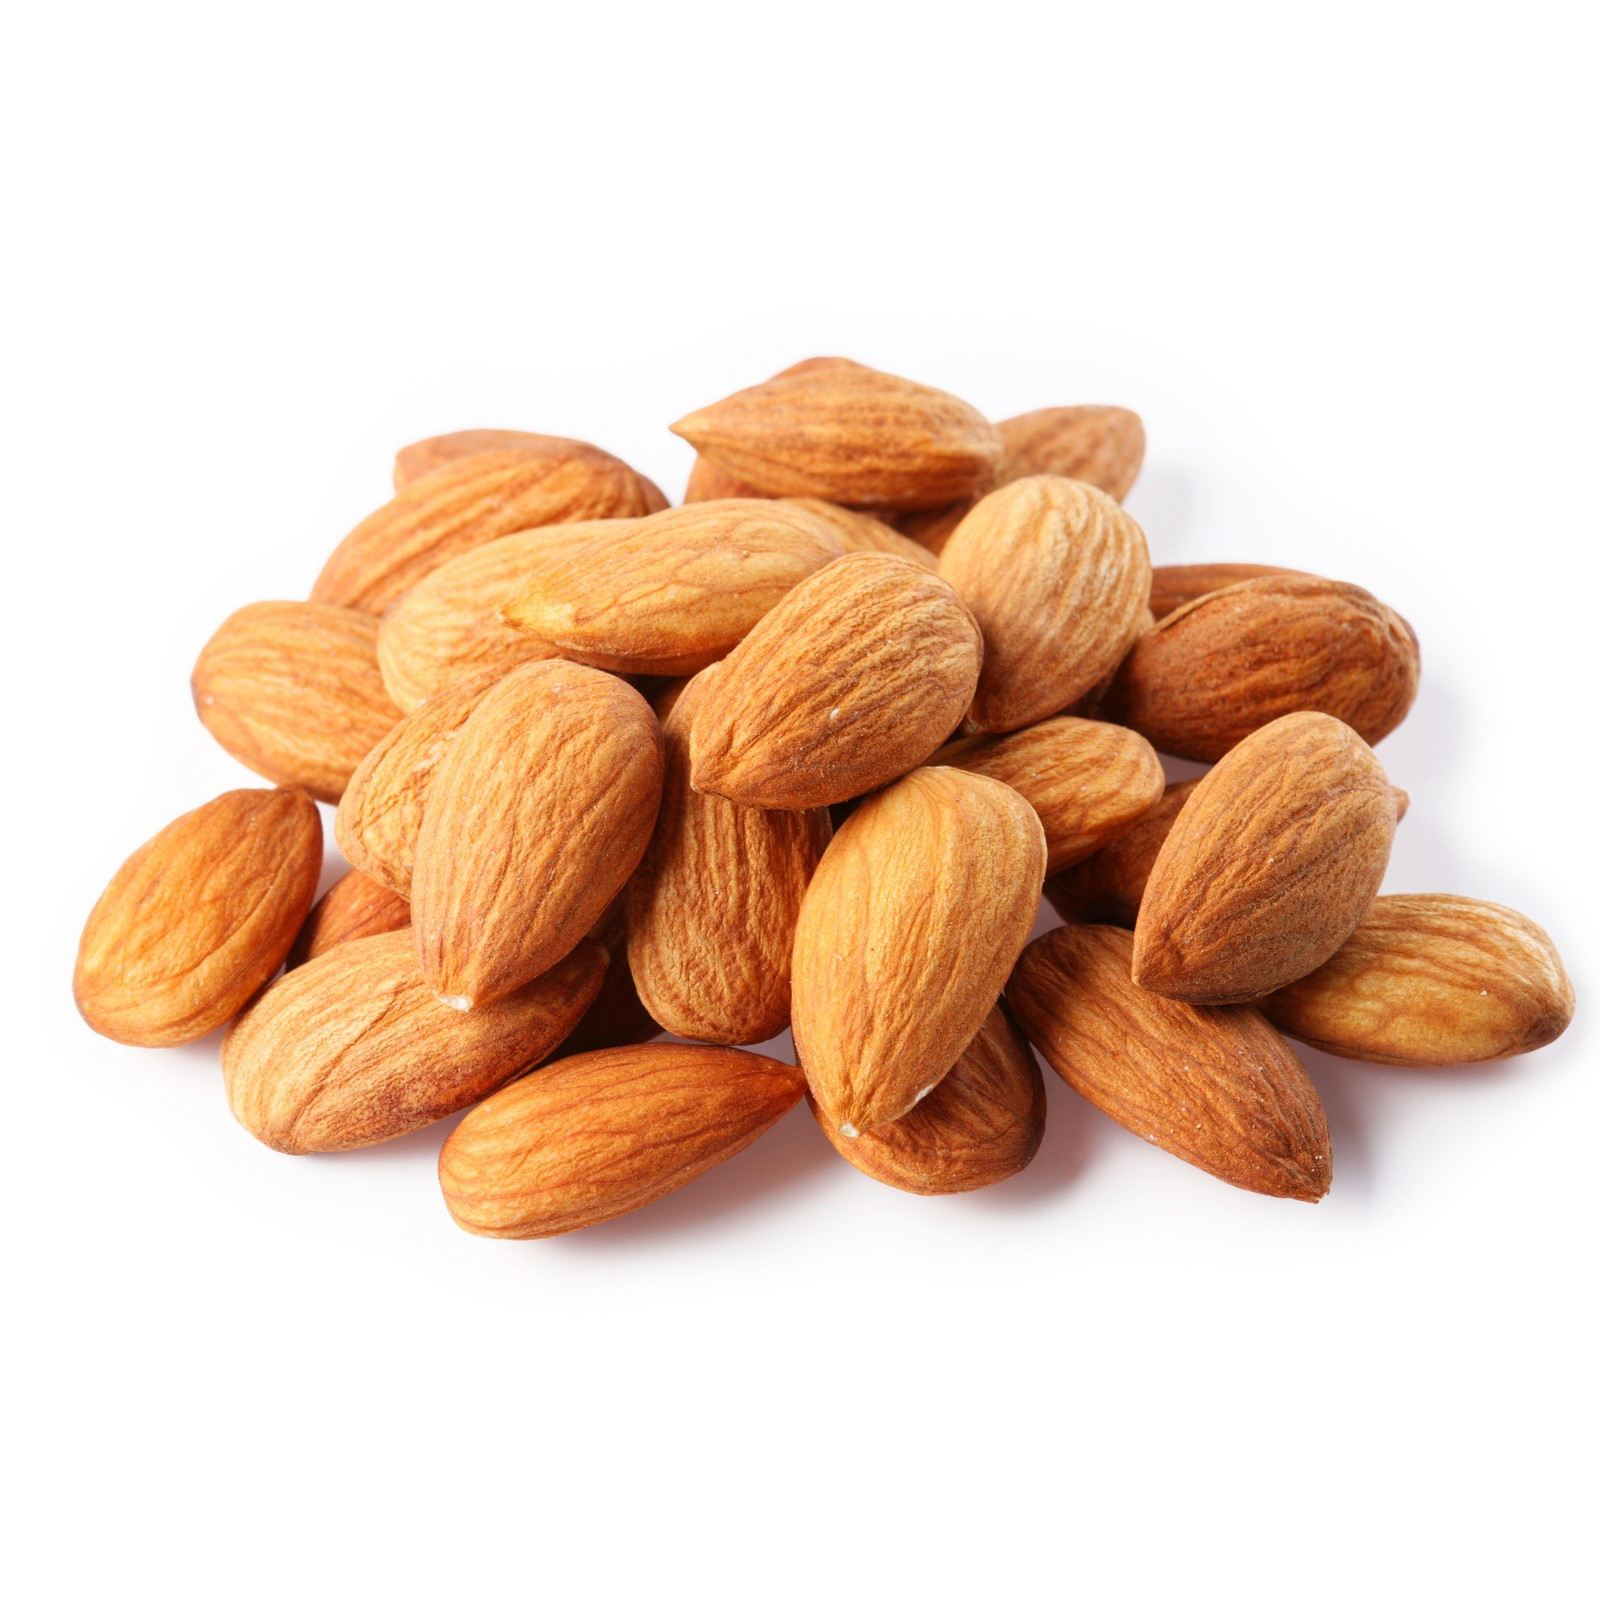 Hạnh nhân tự nhiên Úc 500g (Raw Almonds)